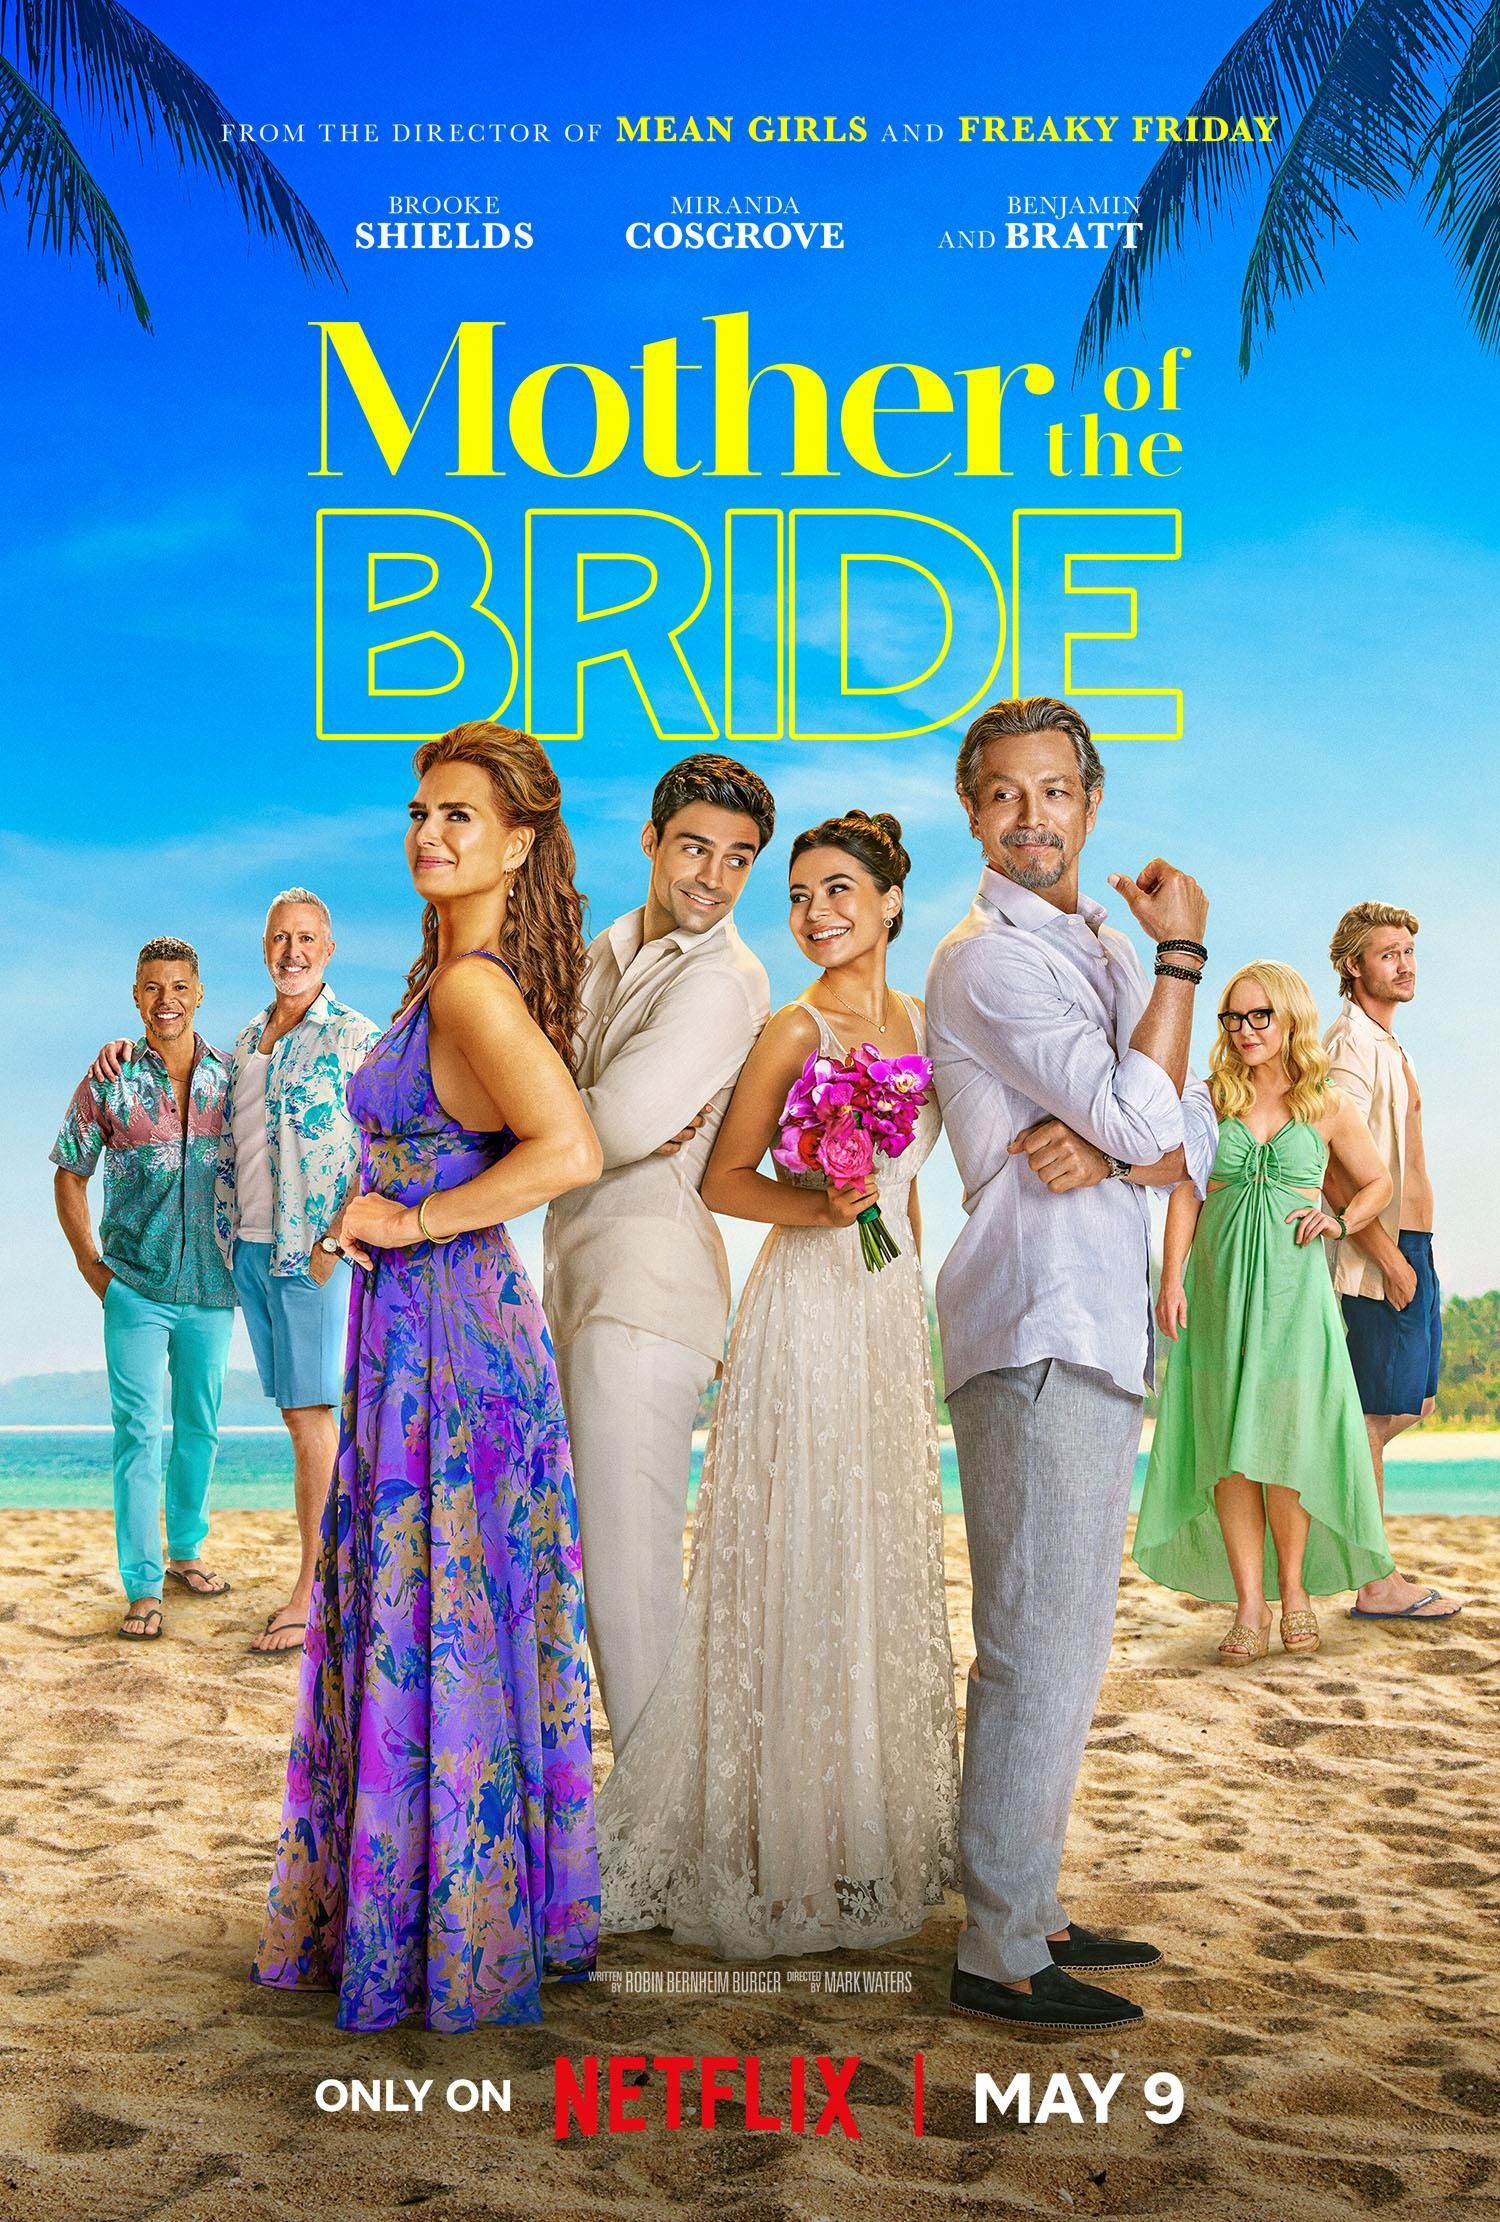 ブルック・シールズ、ミランダ・コスグローブ、ベンジャミン・ブラットがビーチに立つ映画『花嫁の母』のポスター